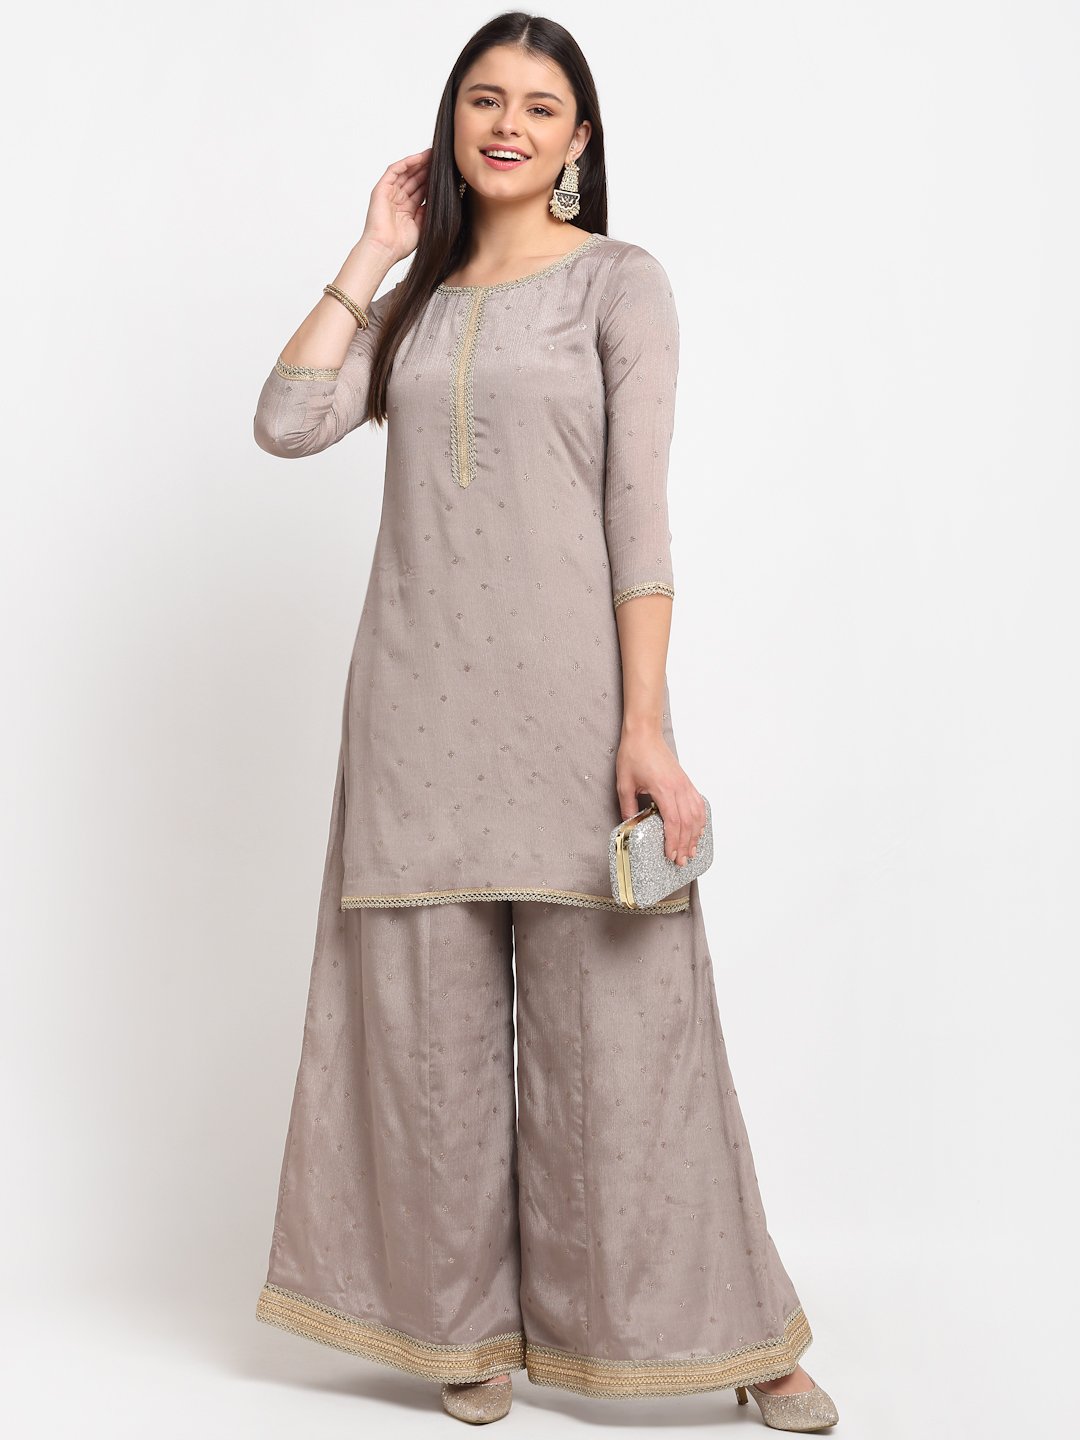 Kurti Women Indian New Design Kurtis Cotton Top Short Kurtis Kurta Tunic  Blouse Plus Size Pant Palazzo Set Saree Punjabi Suit Readymade UD201MMSC |  Lazada